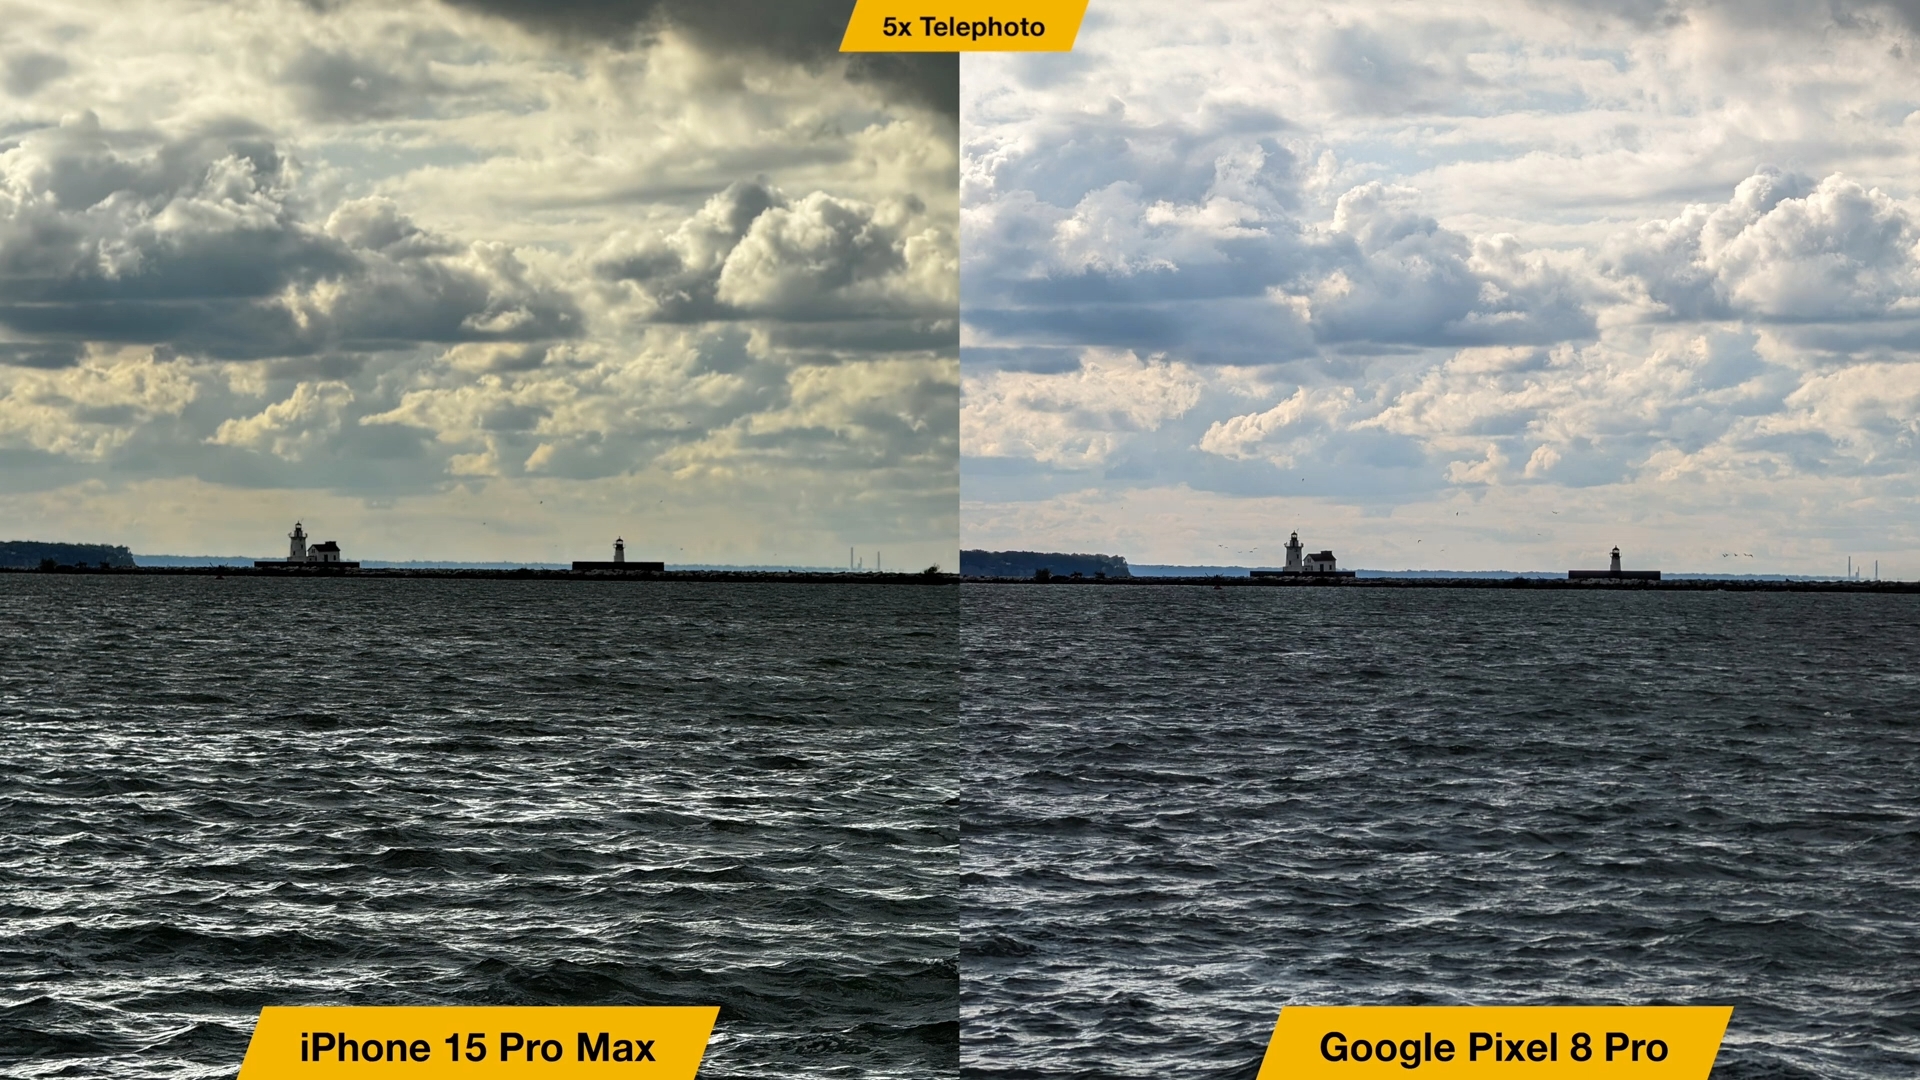 来自 iPhoneIslam.com，Google Pixel XL Pro 和 iPhone 15 Pro Max 之间的比较。